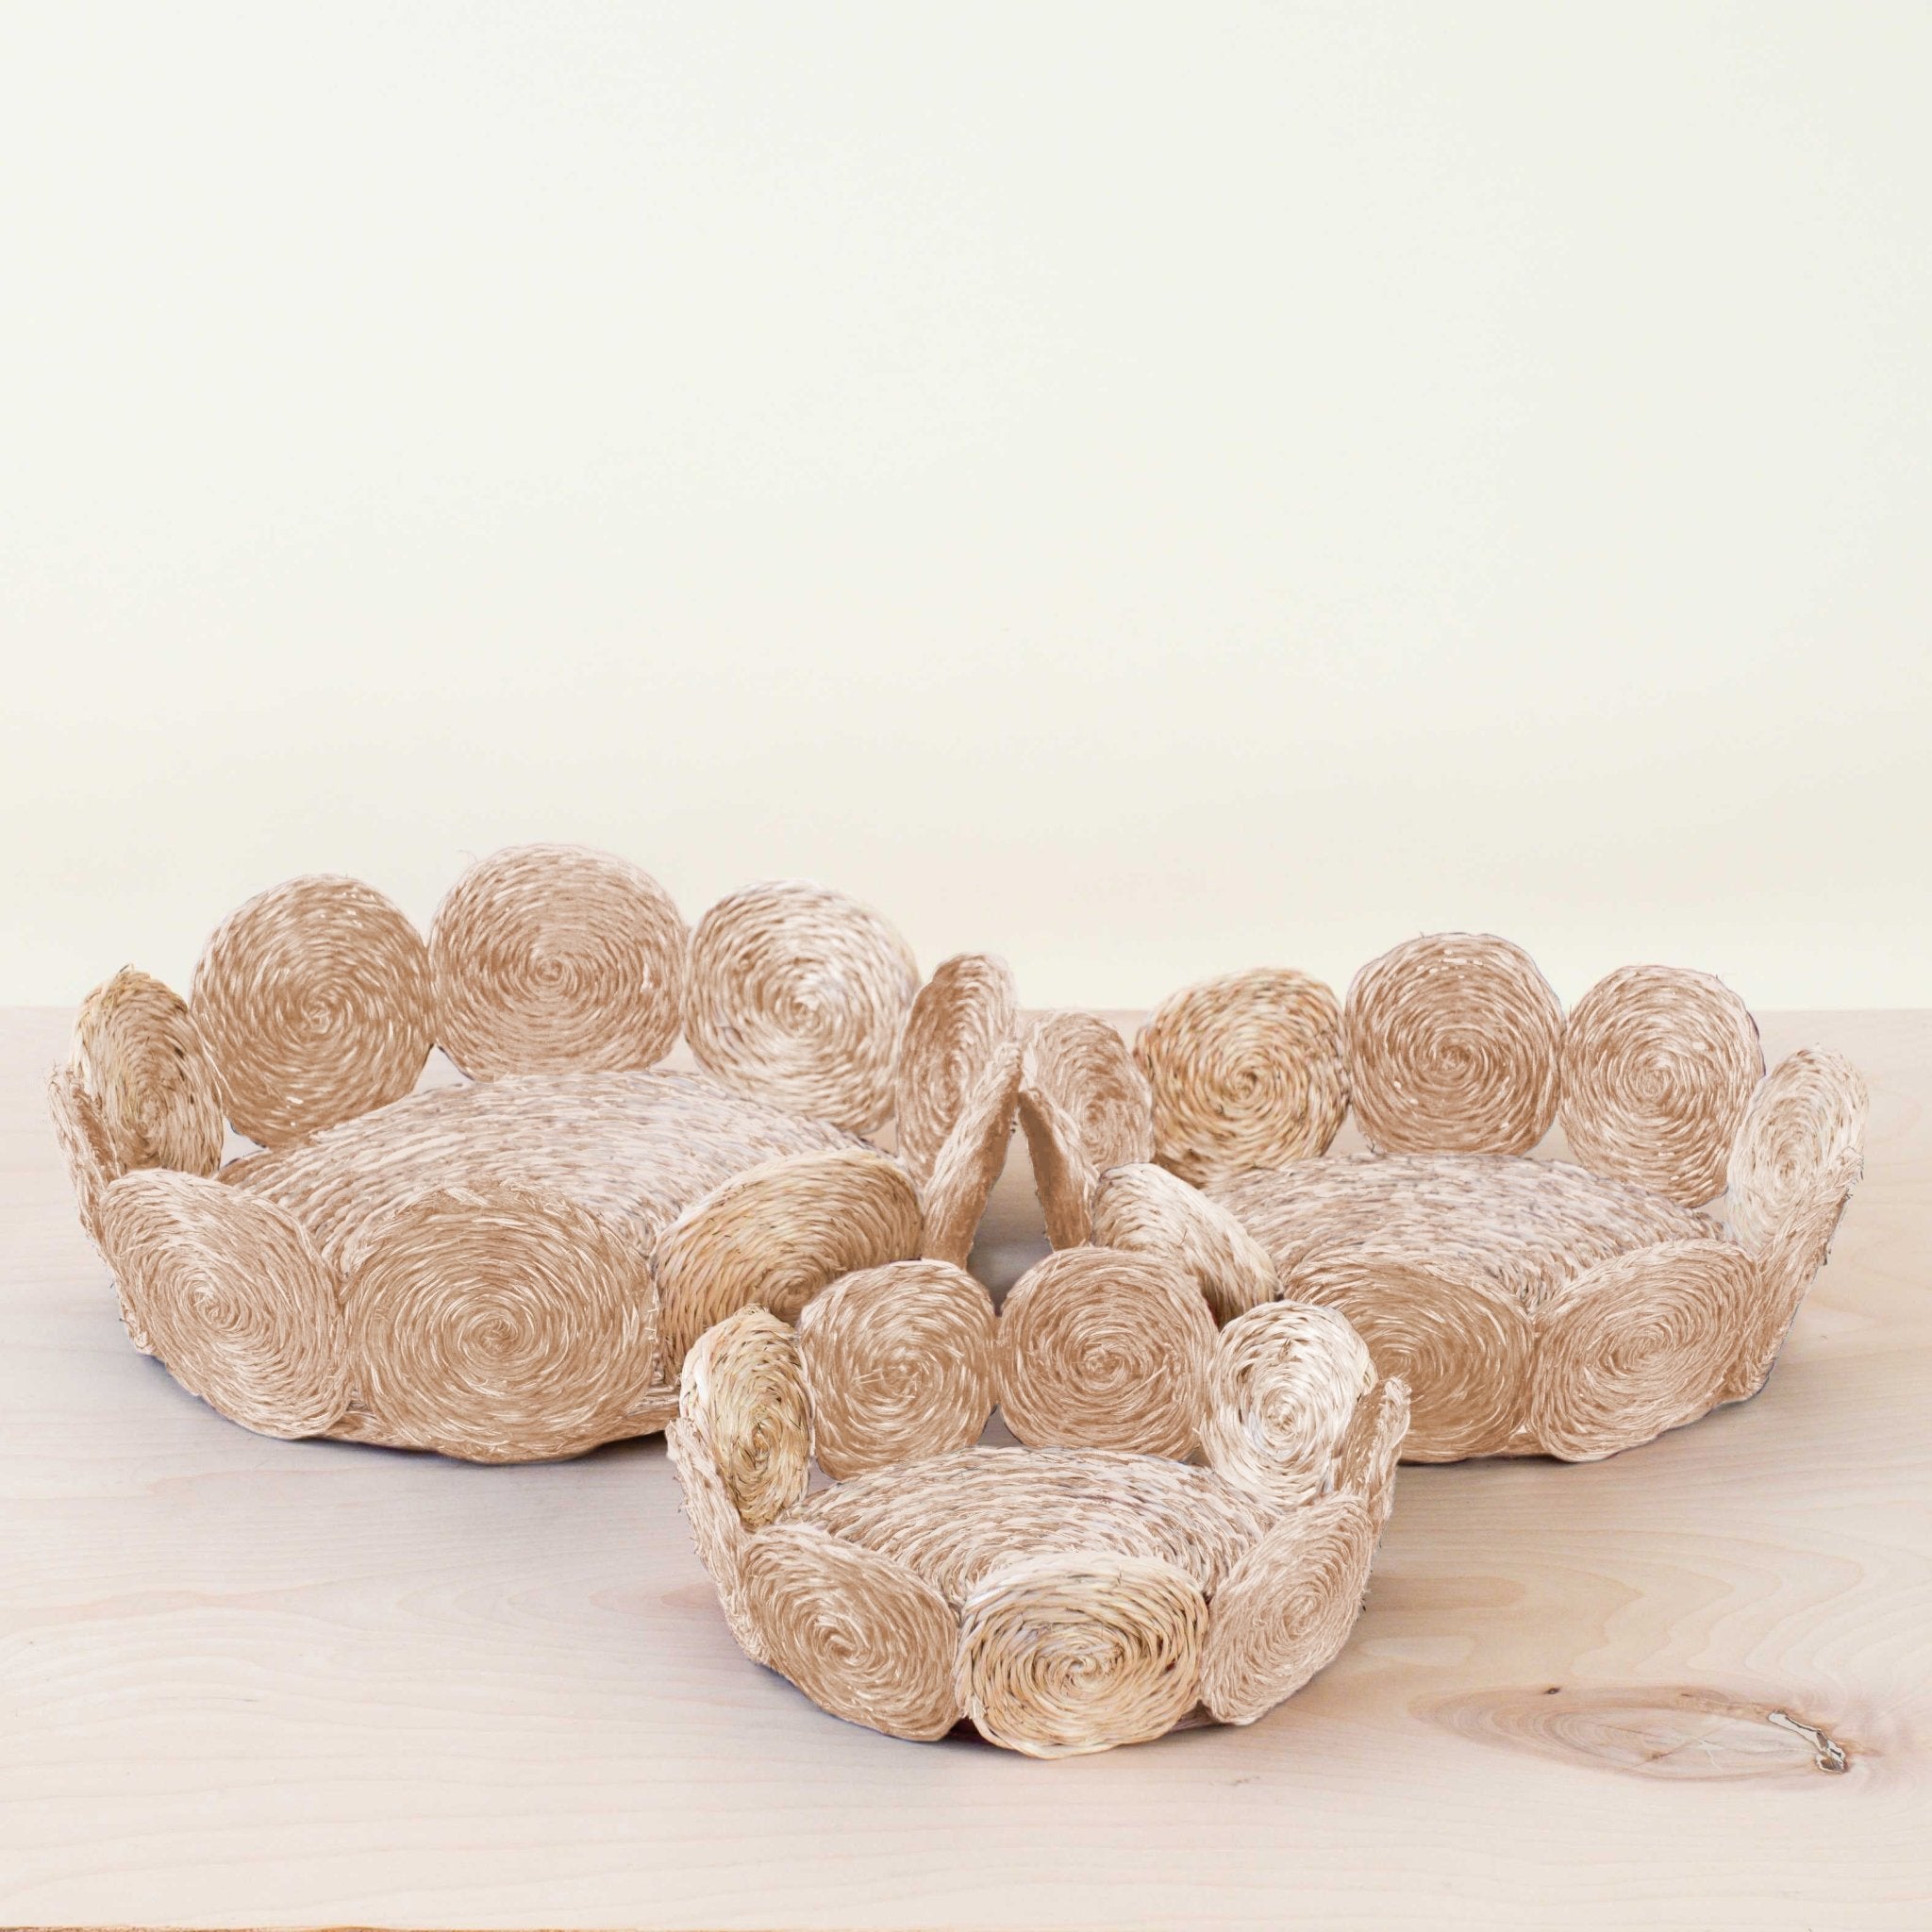 Baskets - Natural Woven Fruit Basket - Storage Basket, set of 3 | LIKHA - LIKHÂ